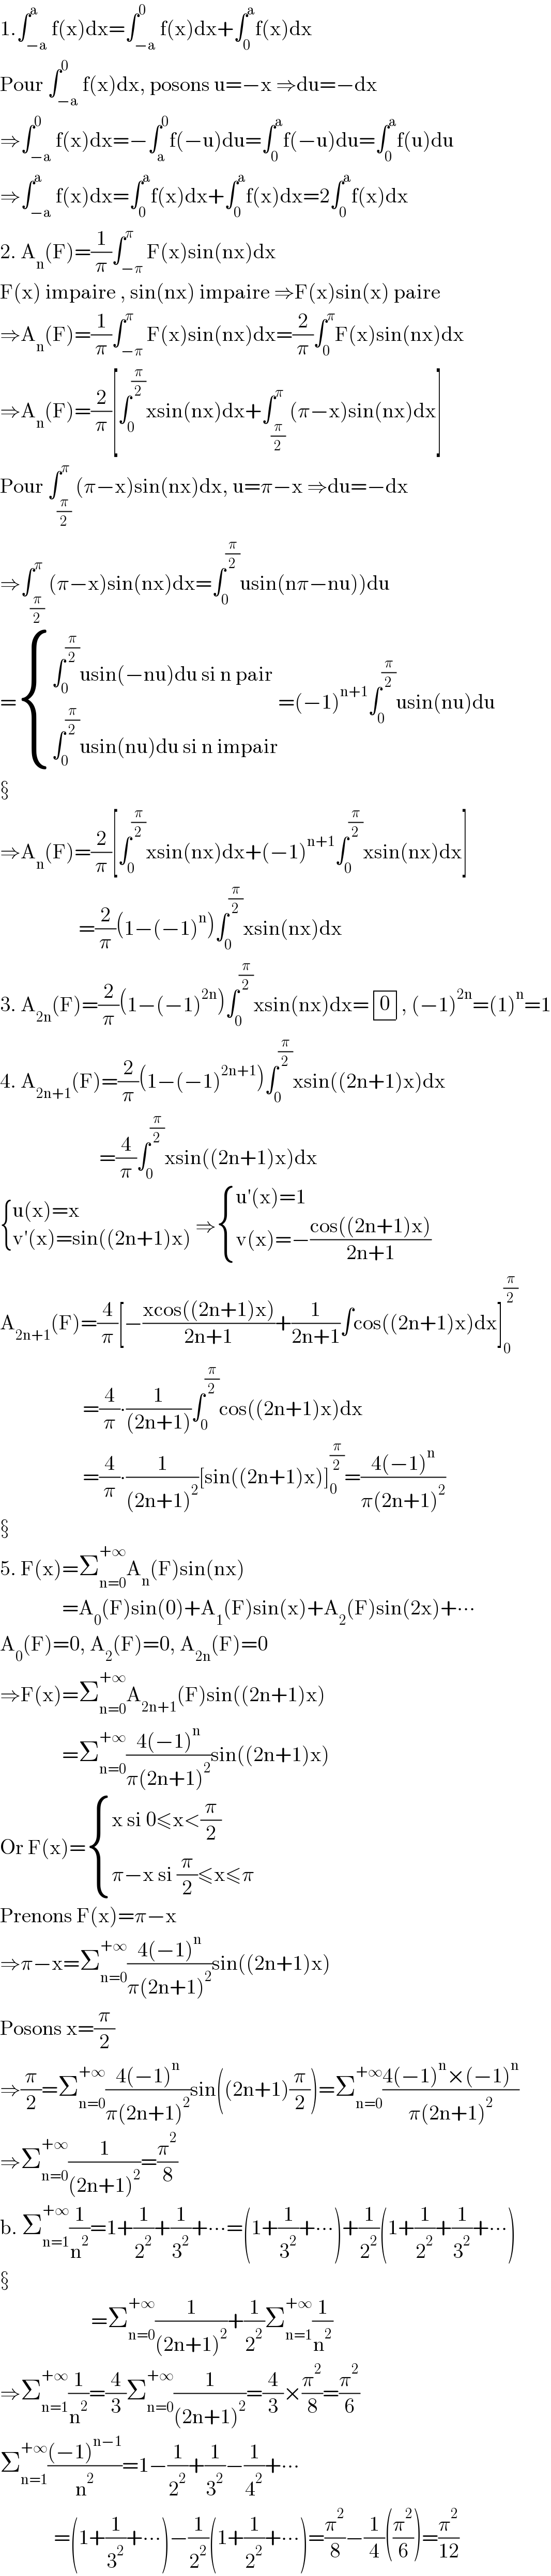 1.∫_(−a) ^a f(x)dx=∫_(−a) ^0 f(x)dx+∫_0 ^a f(x)dx  Pour ∫_(−a) ^0 f(x)dx, posons u=−x ⇒du=−dx  ⇒∫_(−a) ^0 f(x)dx=−∫_a ^0 f(−u)du=∫_0 ^a f(−u)du=∫_0 ^a f(u)du  ⇒∫_(−a) ^a f(x)dx=∫_0 ^a f(x)dx+∫_0 ^a f(x)dx=2∫_0 ^a f(x)dx  2. A_n (F)=(1/π)∫_(−π) ^π F(x)sin(nx)dx  F(x) impaire , sin(nx) impaire ⇒F(x)sin(x) paire  ⇒A_n (F)=(1/π)∫_(−π) ^π F(x)sin(nx)dx=(2/π)∫_0 ^π F(x)sin(nx)dx  ⇒A_n (F)=(2/π)[∫_0 ^(π/2) xsin(nx)dx+∫_(π/2) ^π (π−x)sin(nx)dx]  Pour ∫_(π/2) ^π (π−x)sin(nx)dx, u=π−x ⇒du=−dx  ⇒∫_(π/2) ^π (π−x)sin(nx)dx=∫_0 ^(π/2) usin(nπ−nu))du  = { ((∫_0 ^(π/2) usin(−nu)du si n pair)),((∫_0 ^(π/2) usin(nu)du si n impair)) :}=(−1)^(n+1) ∫_0 ^(π/2) usin(nu)du     ⇒A_n (F)=(2/π)[∫_0 ^(π/2) xsin(nx)dx+(−1)^(n+1) ∫_0 ^(π/2) xsin(nx)dx]                     =(2/π)(1−(−1)^n )∫_0 ^(π/2) xsin(nx)dx  3. A_(2n) (F)=(2/π)(1−(−1)^(2n) )∫_0 ^(π/2) xsin(nx)dx= determinant ((0)), (−1)^(2n) =(1)^n =1  4. A_(2n+1) (F)=(2/π)(1−(−1)^(2n+1) )∫_0 ^(π/2) xsin((2n+1)x)dx                          =(4/π)∫_0 ^(π/2) xsin((2n+1)x)dx   { ((u(x)=x)),((v′(x)=sin((2n+1)x))) :} ⇒ { ((u′(x)=1)),((v(x)=−((cos((2n+1)x))/(2n+1)))) :}  A_(2n+1) (F)=(4/π)[−((xcos((2n+1)x))/(2n+1))+(1/(2n+1))∫cos((2n+1)x)dx]_0 ^(π/2)                       =(4/π)∙(1/((2n+1)))∫_0 ^(π/2) cos((2n+1)x)dx                      =(4/π)∙(1/((2n+1)^2 ))[sin((2n+1)x)]_0 ^(π/2) =((4(−1)^n )/(π(2n+1)^2 ))     5. F(x)=Σ_(n=0) ^(+∞) A_n (F)sin(nx)                 =A_0 (F)sin(0)+A_1 (F)sin(x)+A_2 (F)sin(2x)+∙∙∙  A_0 (F)=0, A_2 (F)=0, A_(2n) (F)=0  ⇒F(x)=Σ_(n=0) ^(+∞) A_(2n+1) (F)sin((2n+1)x)                 =Σ_(n=0) ^(+∞) ((4(−1)^n )/(π(2n+1)^2 ))sin((2n+1)x)  Or F(x)= { ((x si 0≤x<(π/2))),((π−x si (π/2)≤x≤π)) :}  Prenons F(x)=π−x  ⇒π−x=Σ_(n=0) ^(+∞) ((4(−1)^n )/(π(2n+1)^2 ))sin((2n+1)x)  Posons x=(π/2)  ⇒(π/2)=Σ_(n=0) ^(+∞) ((4(−1)^n )/(π(2n+1)^2 ))sin((2n+1)(π/2))=Σ_(n=0) ^(+∞) ((4(−1)^n ×(−1)^n )/(π(2n+1)^2 ))  ⇒Σ_(n=0) ^(+∞) (1/((2n+1)^2 ))=(π^2 /8)  b. Σ_(n=1) ^(+∞) (1/n^2 )=1+(1/2^2 )+(1/3^2 )+∙∙∙=(1+(1/3^2 )+∙∙∙)+(1/2^2 )(1+(1/2^2 )+(1/3^2 )+∙∙∙)                           =Σ_(n=0) ^(+∞) (1/((2n+1)^2 ))+(1/2^2 )Σ_(n=1) ^(+∞) (1/n^2 )  ⇒Σ_(n=1) ^(+∞) (1/n^2 )=(4/3)Σ_(n=0) ^(+∞) (1/((2n+1)^2 ))=(4/3)×(π^2 /8)=(π^2 /6)  Σ_(n=1) ^(+∞) (((−1)^(n−1) )/n^2 )=1−(1/2^2 )+(1/3^2 )−(1/4^2 )+∙∙∙               =(1+(1/3^2 )+∙∙∙)−(1/2^2 )(1+(1/2^2 )+∙∙∙)=(π^2 /8)−(1/4)((π^2 /6))=(π^2 /(12))  